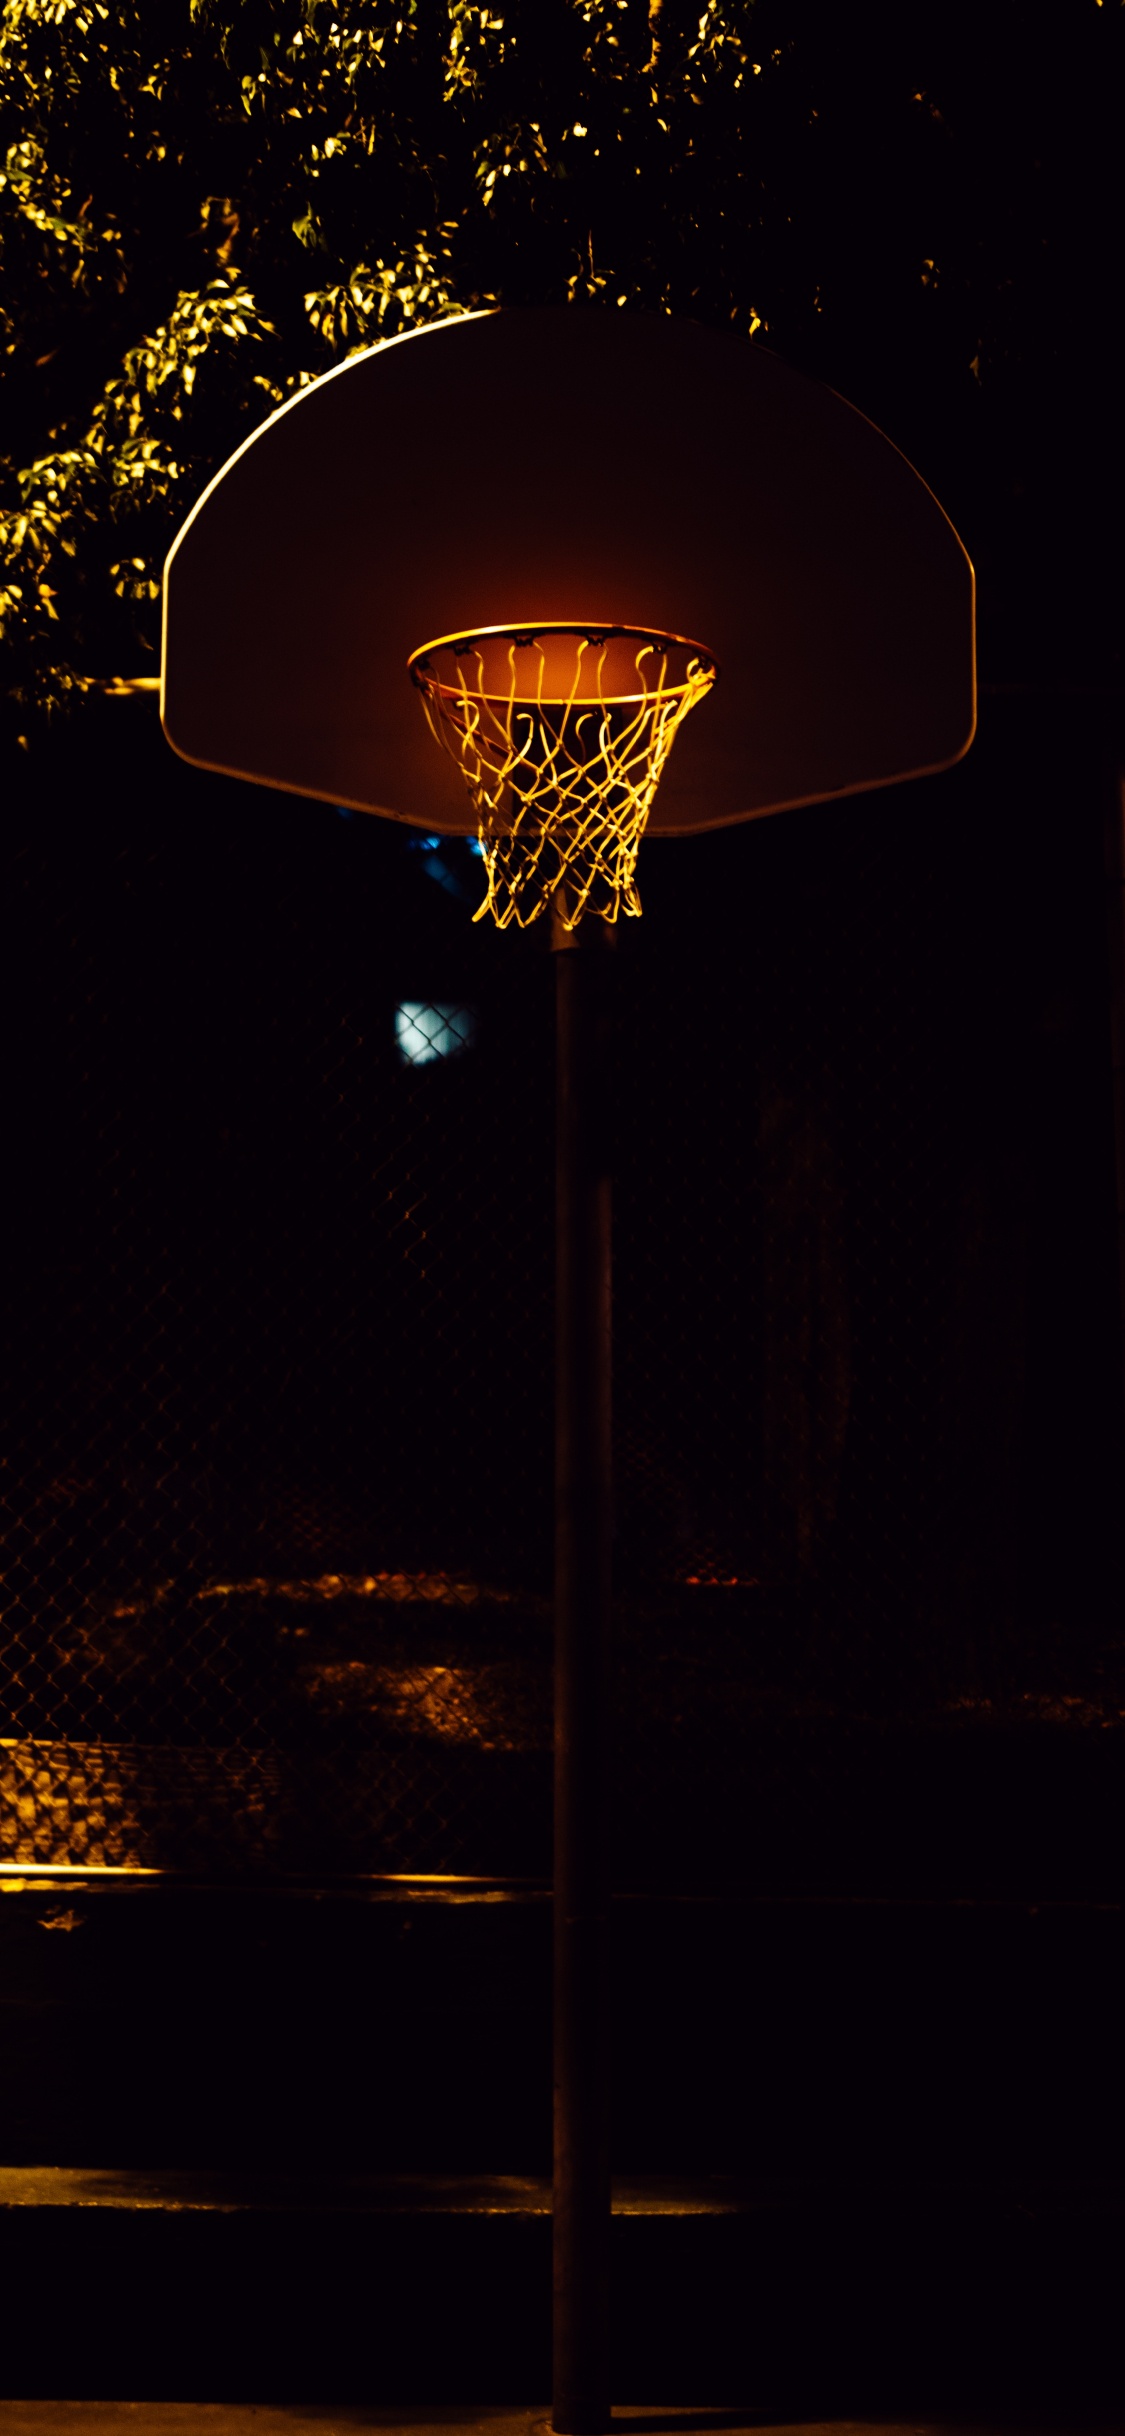 Panier de Basket Avec Lumière Allumée Pendant la Nuit. Wallpaper in 1125x2436 Resolution